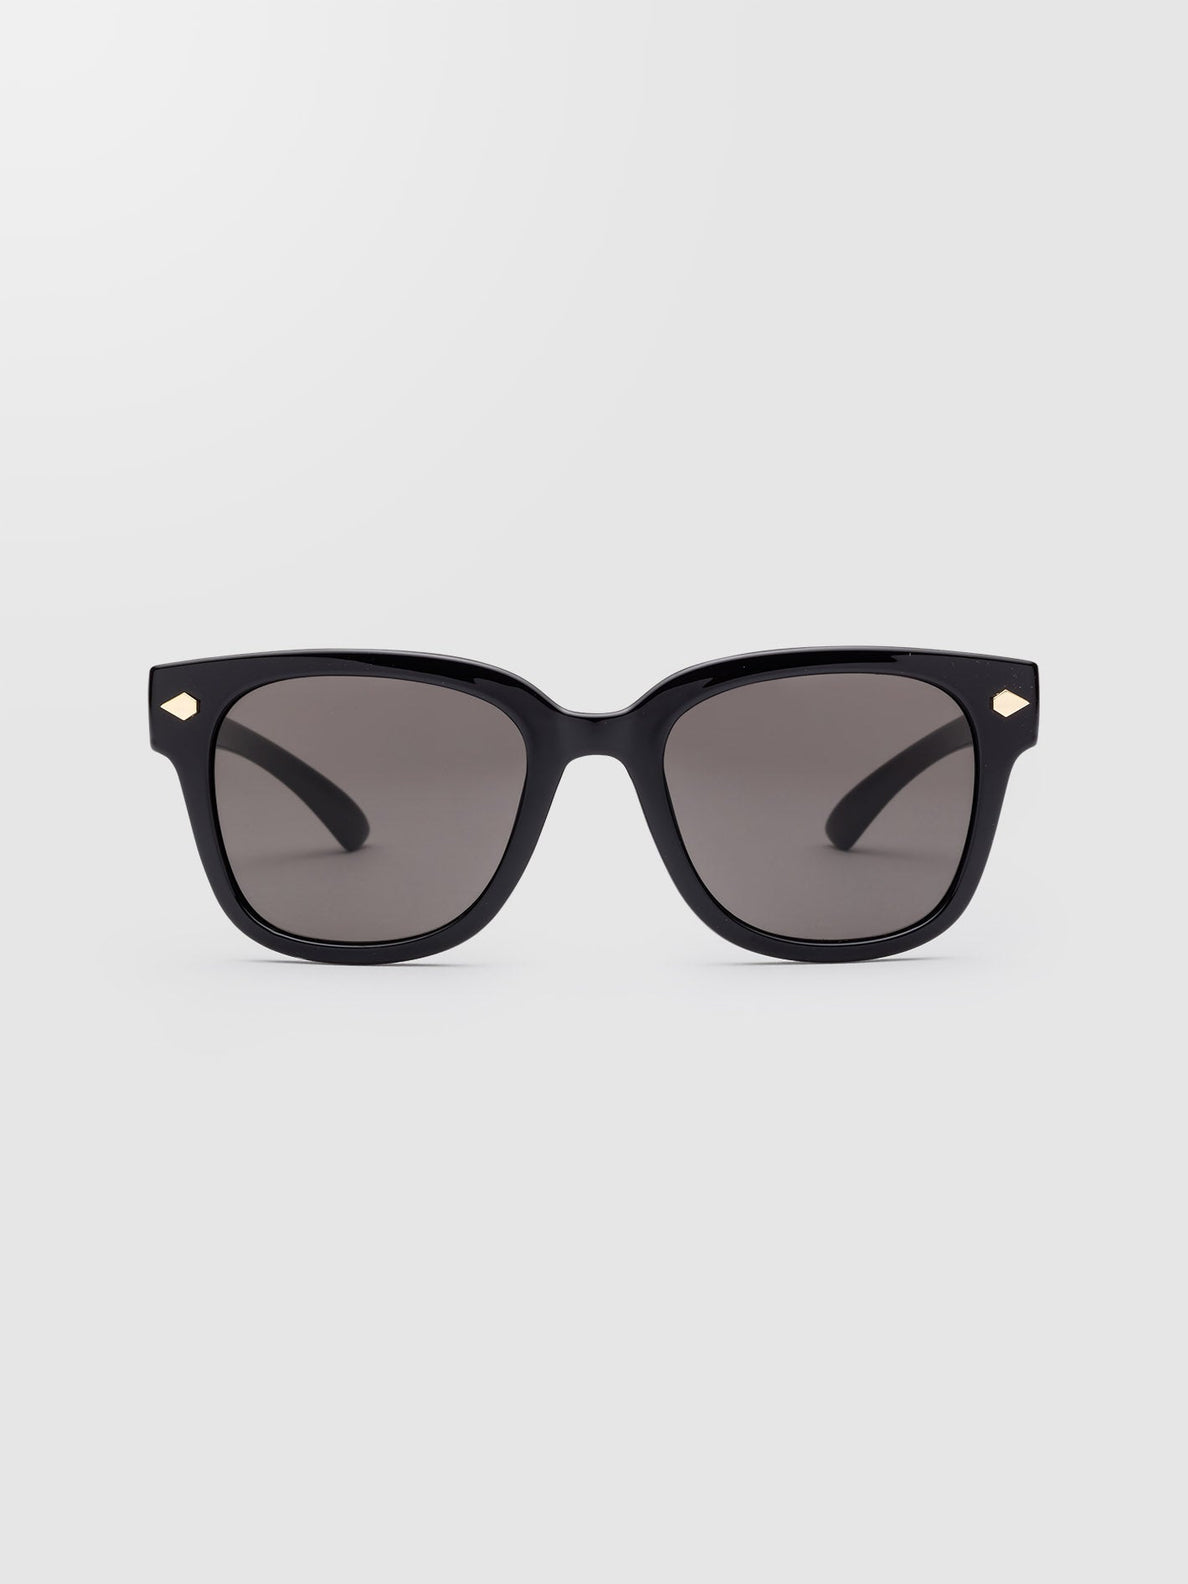 Gafas de sol Freestyle Gloss Black (cristales grises) - GRAY